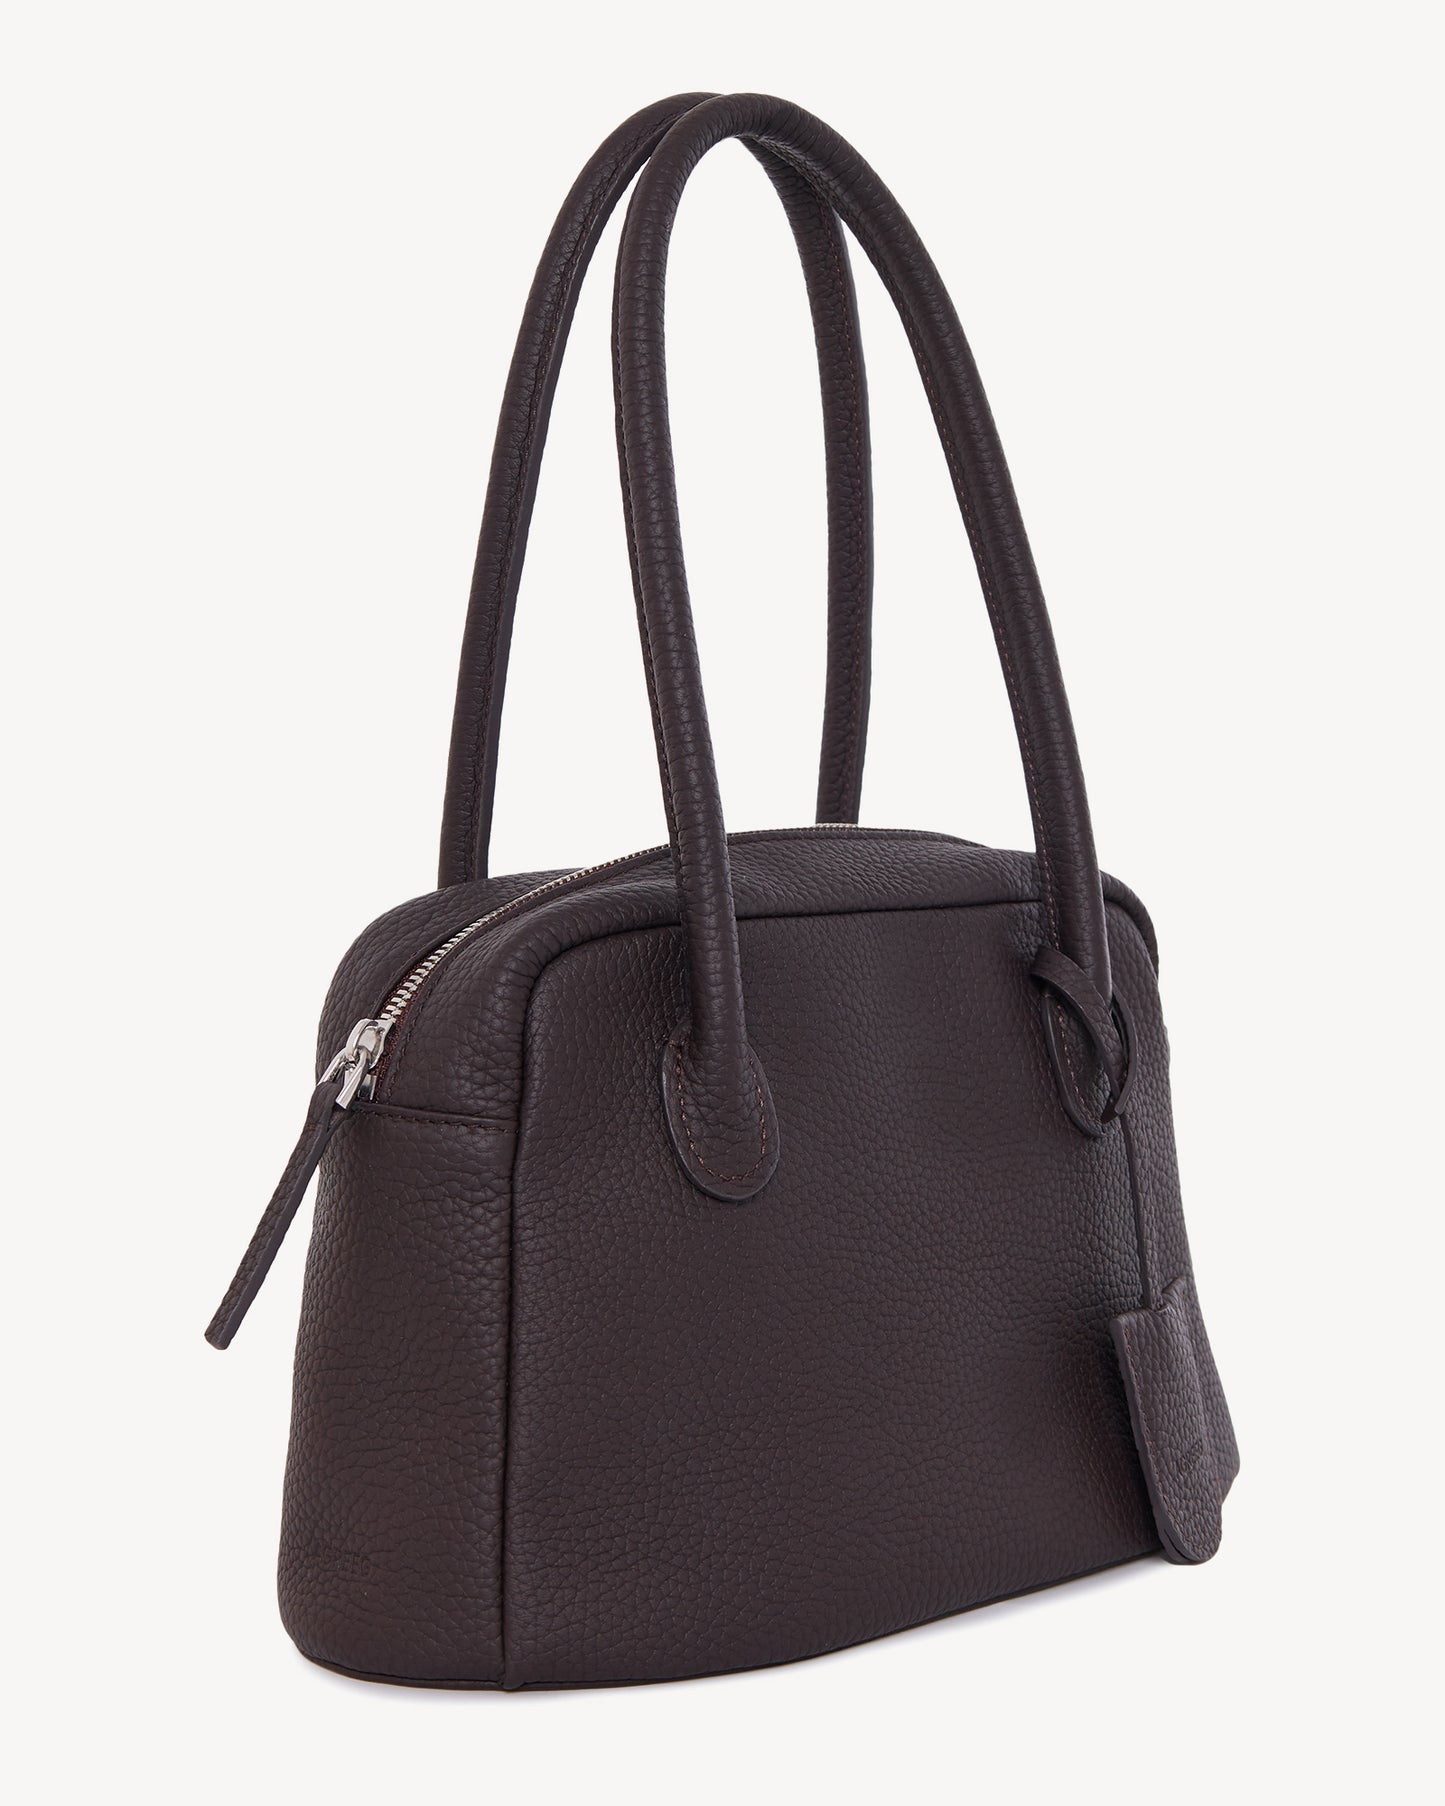 Teona mini leather bag